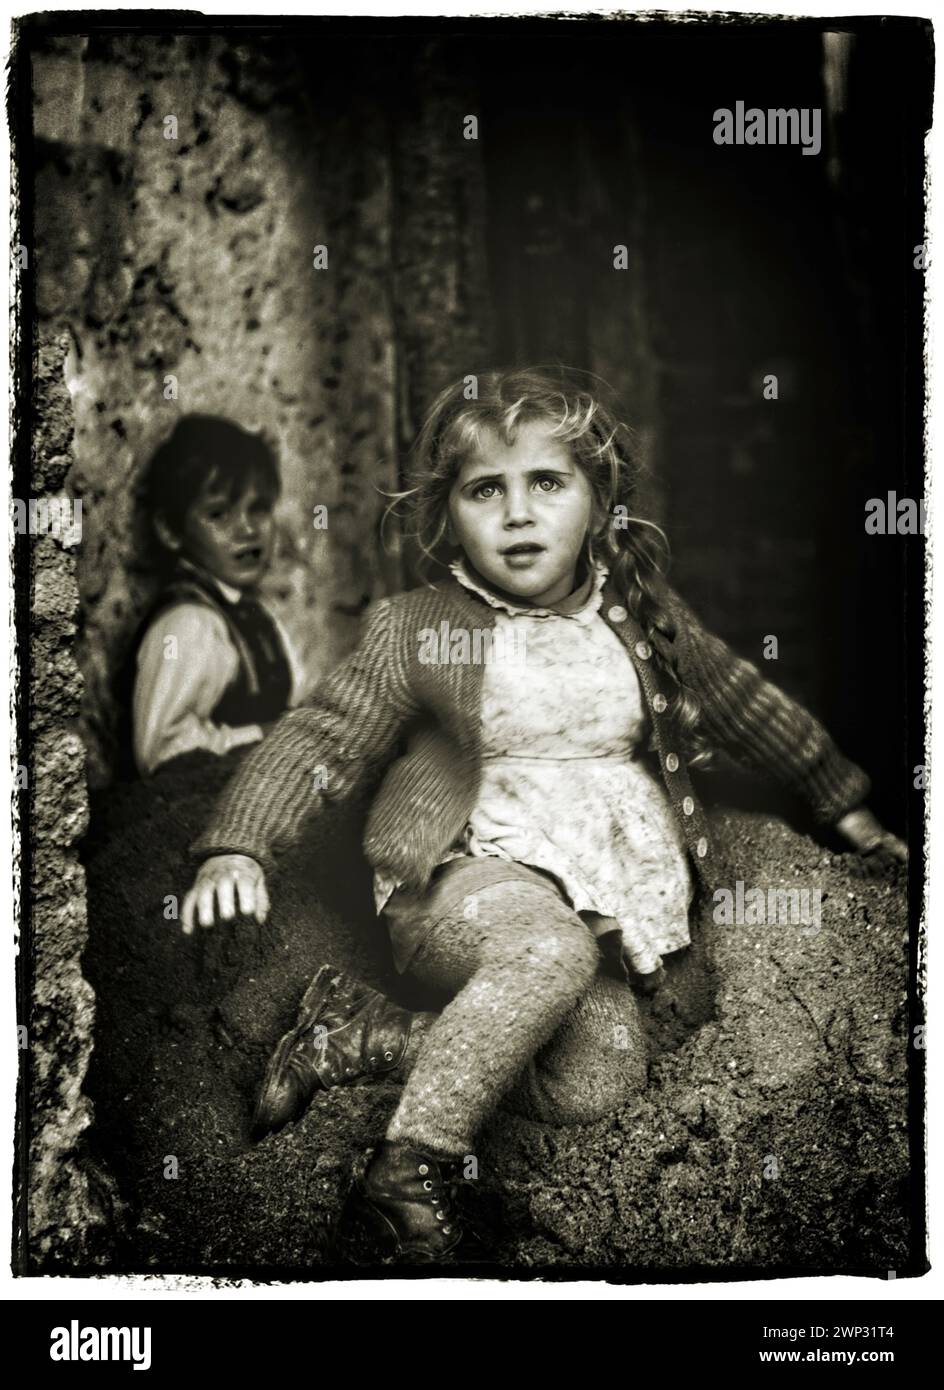 ARTE FOTOGRAFICA STORICA: Bambini rom che giocano in rovina a Monaco (Baviera, Germania). Foto 1959 di Edmund Nagele FRPS con un Voigtlander Vito B. Foto Stock